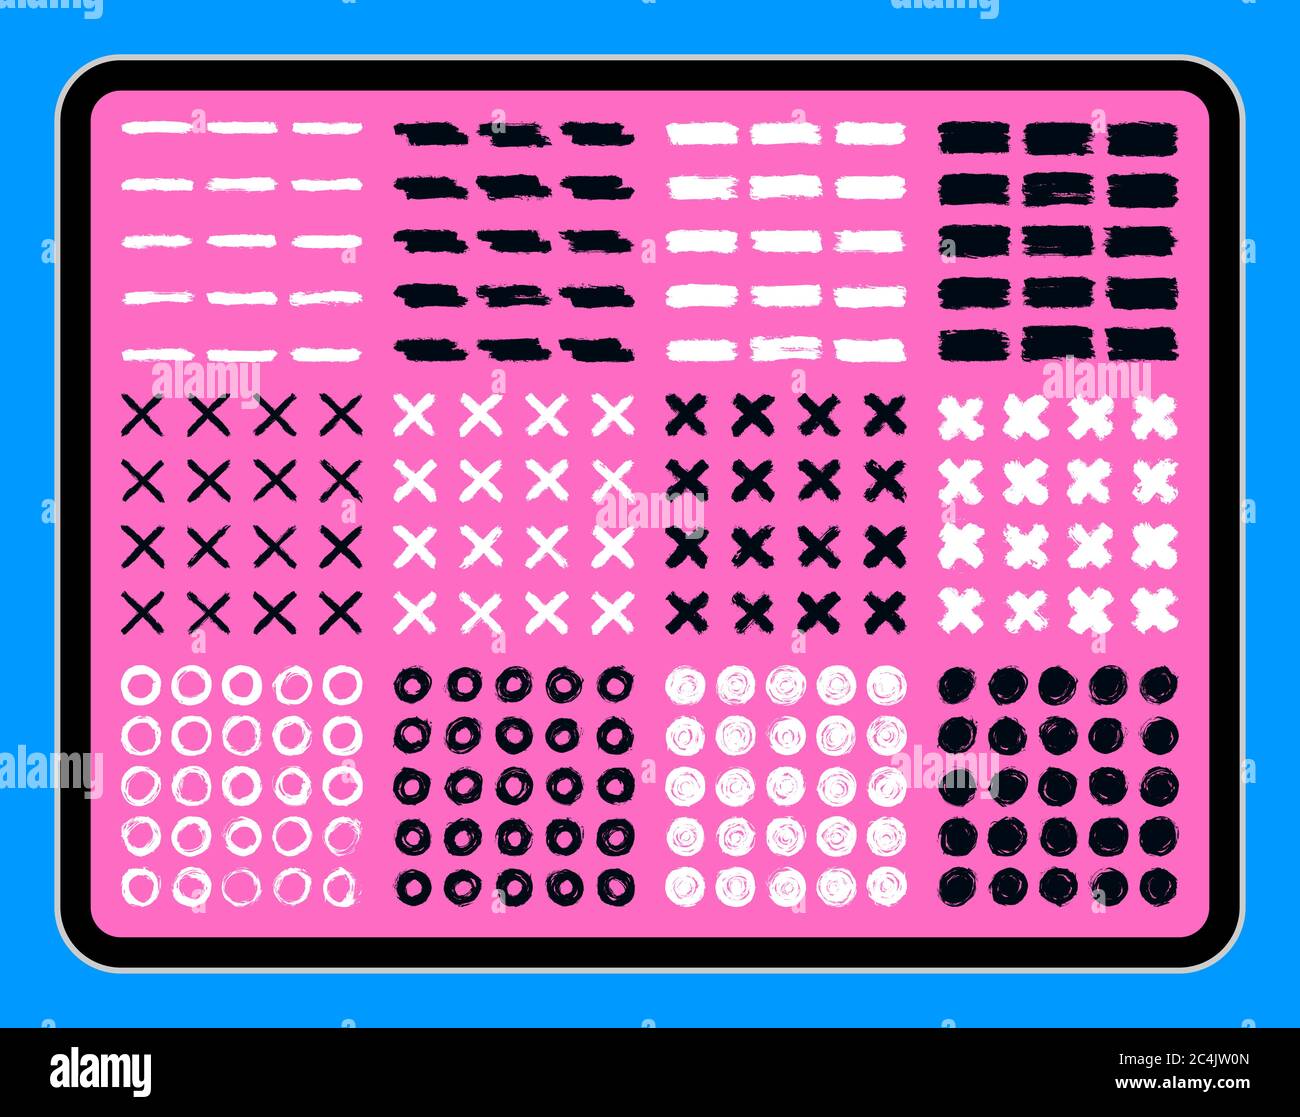 Pinselstrich auf dem Touchscreen-Display des Tabletts. Sammlung von schmutzigen Textur. Pad mit schwarzen und weißen Pinselstrichen auf rosa Bildschirm. Mockup-Gerät. D Stock Vektor